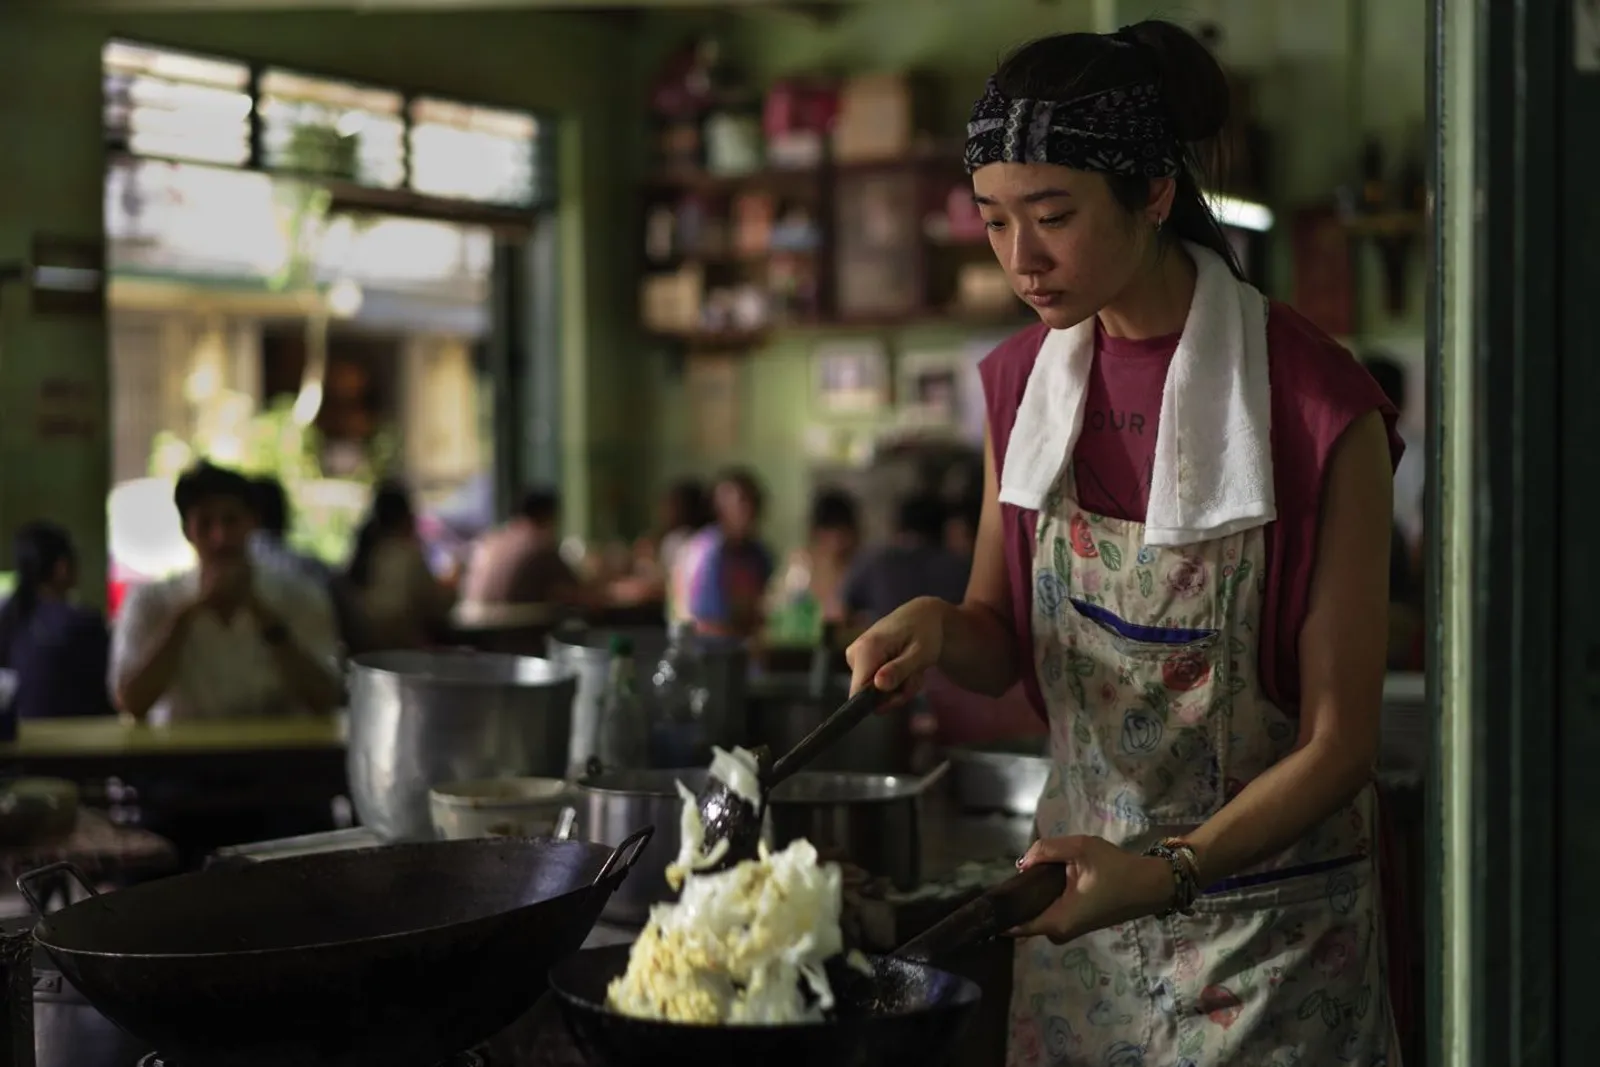 Deretan Fakta 'Hunger', Film Bertema Kuliner Saingan 'The Menu'